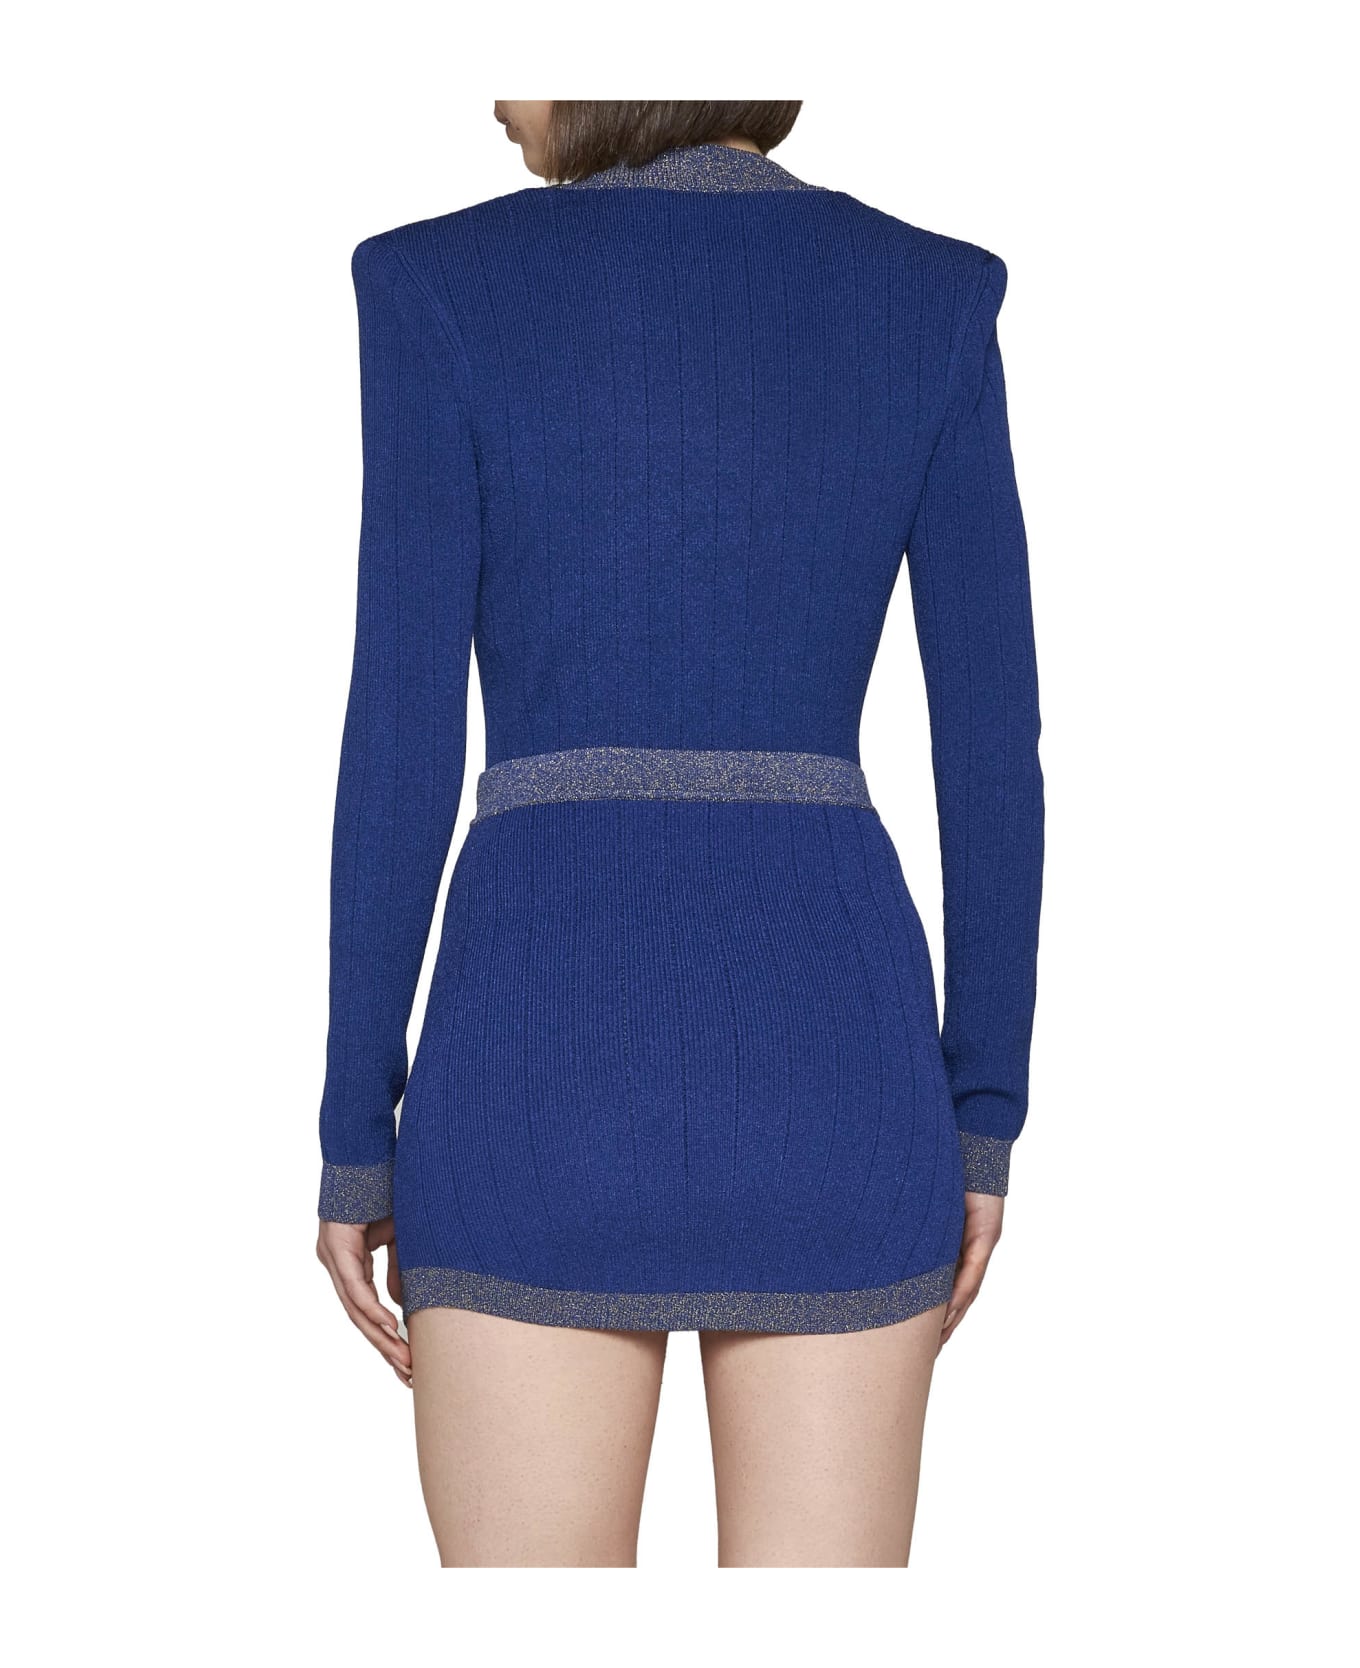 Balmain Skirt - Bleu fonce or